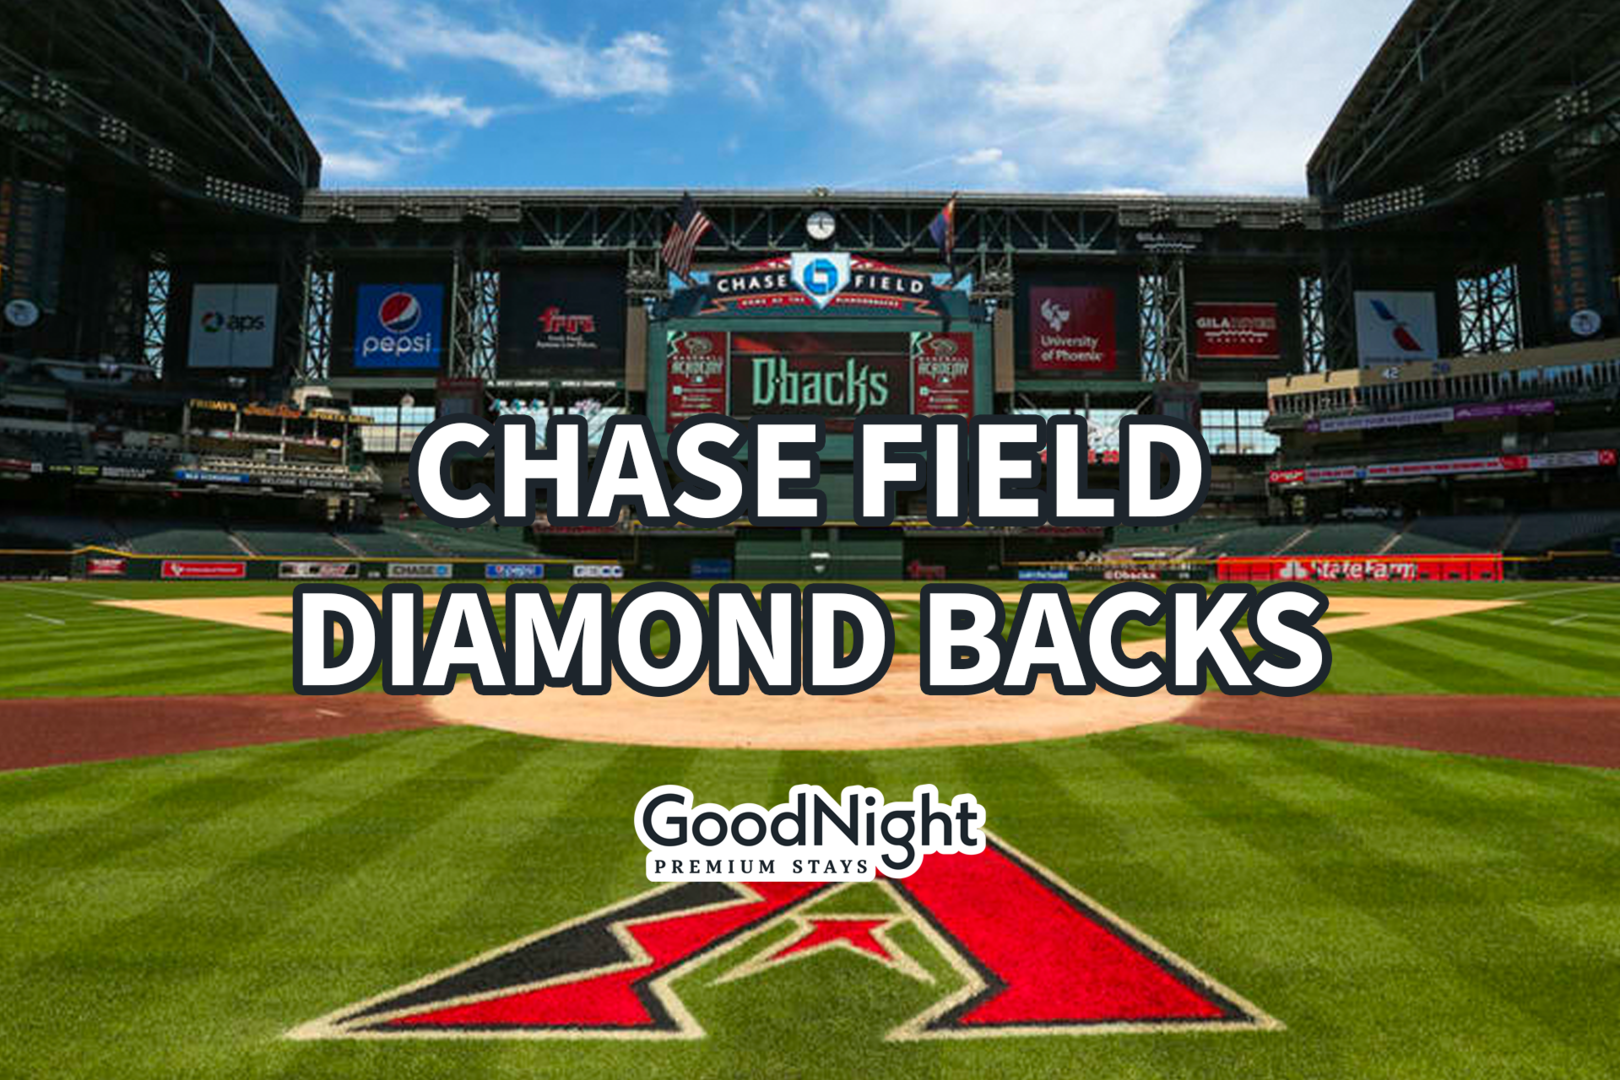 26 mins: Chase Field - Diamond Backs